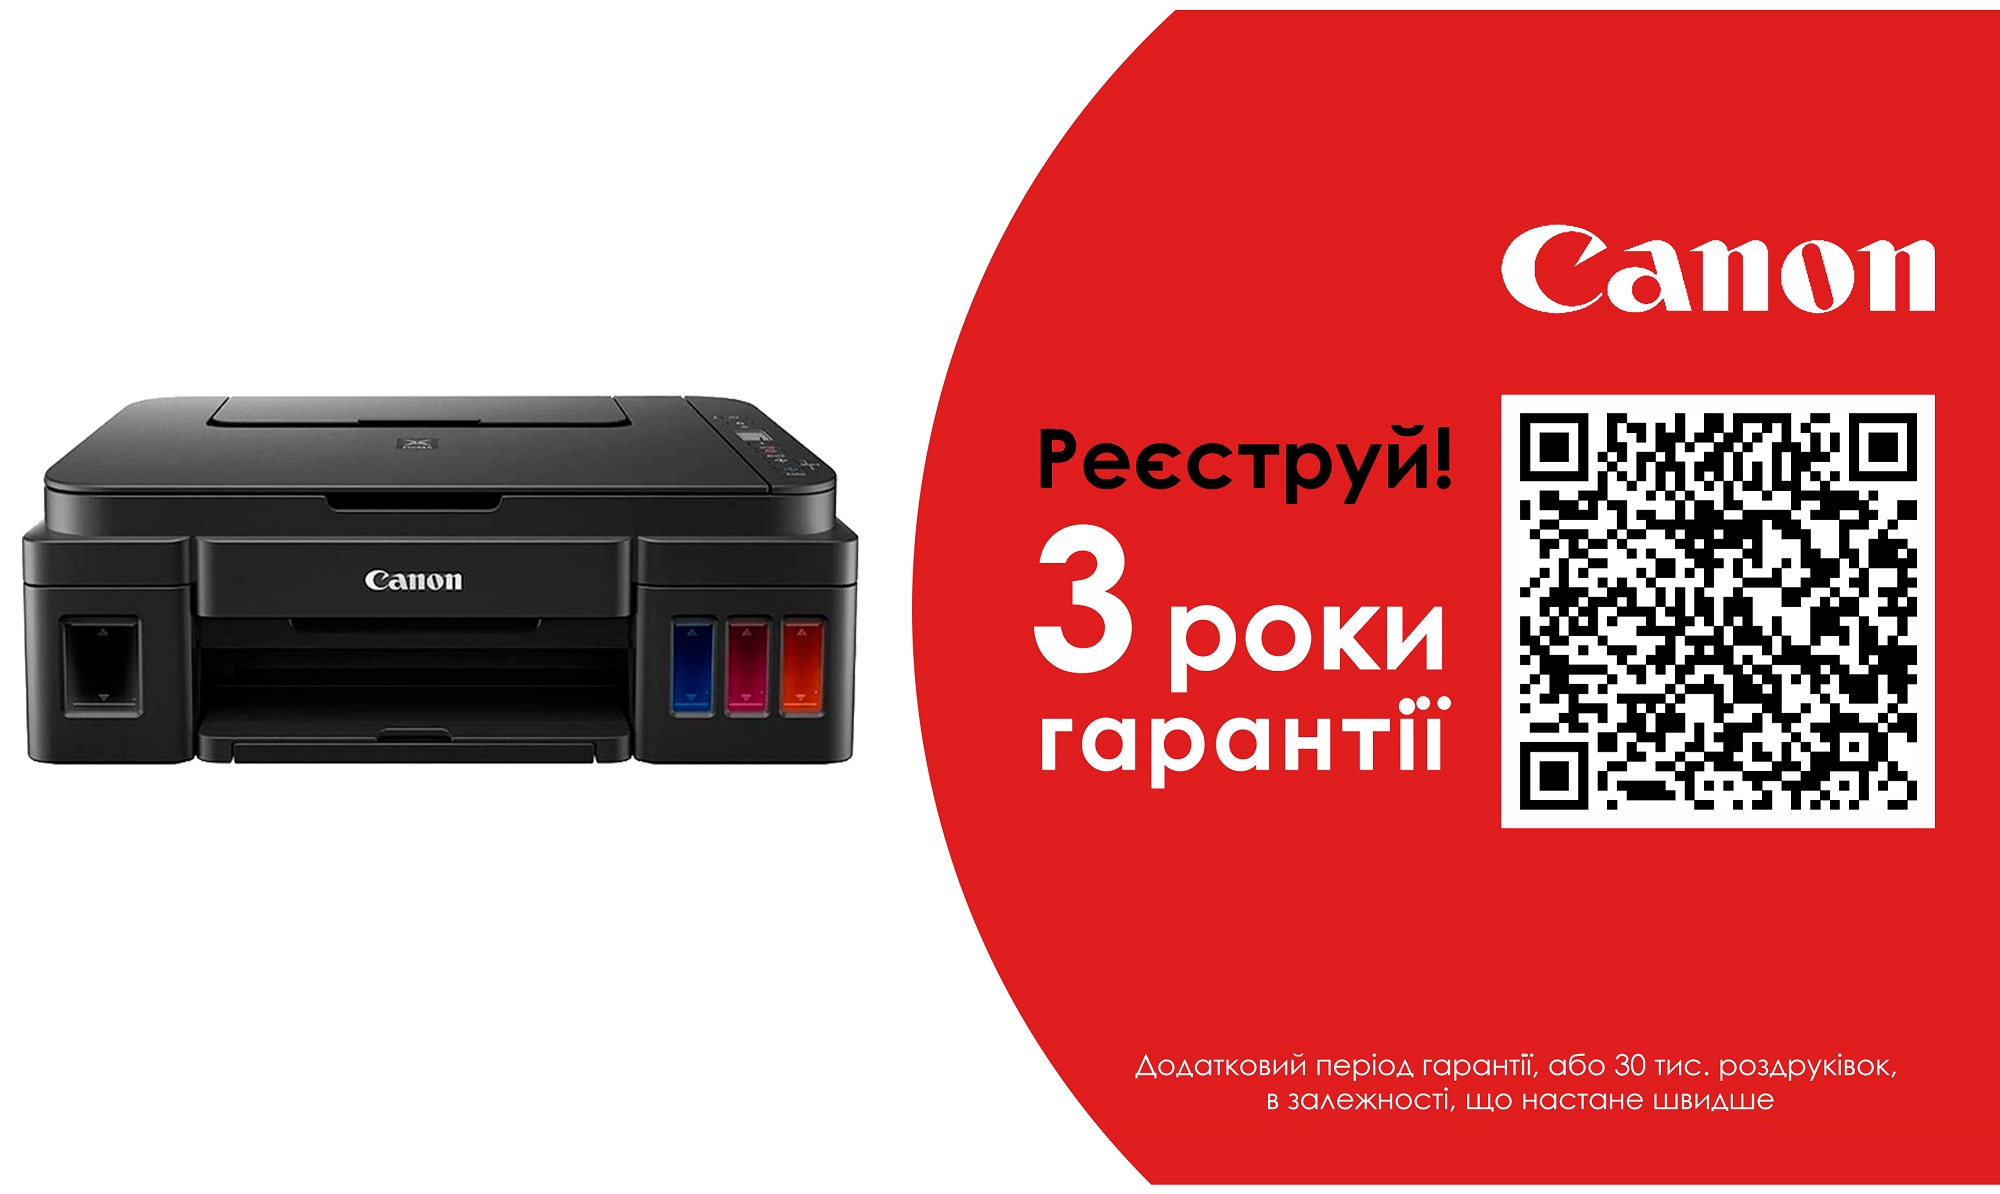 МФУ CANON Pixma G3411 Wi-Fi (2315C009/2315C025) в Киеве